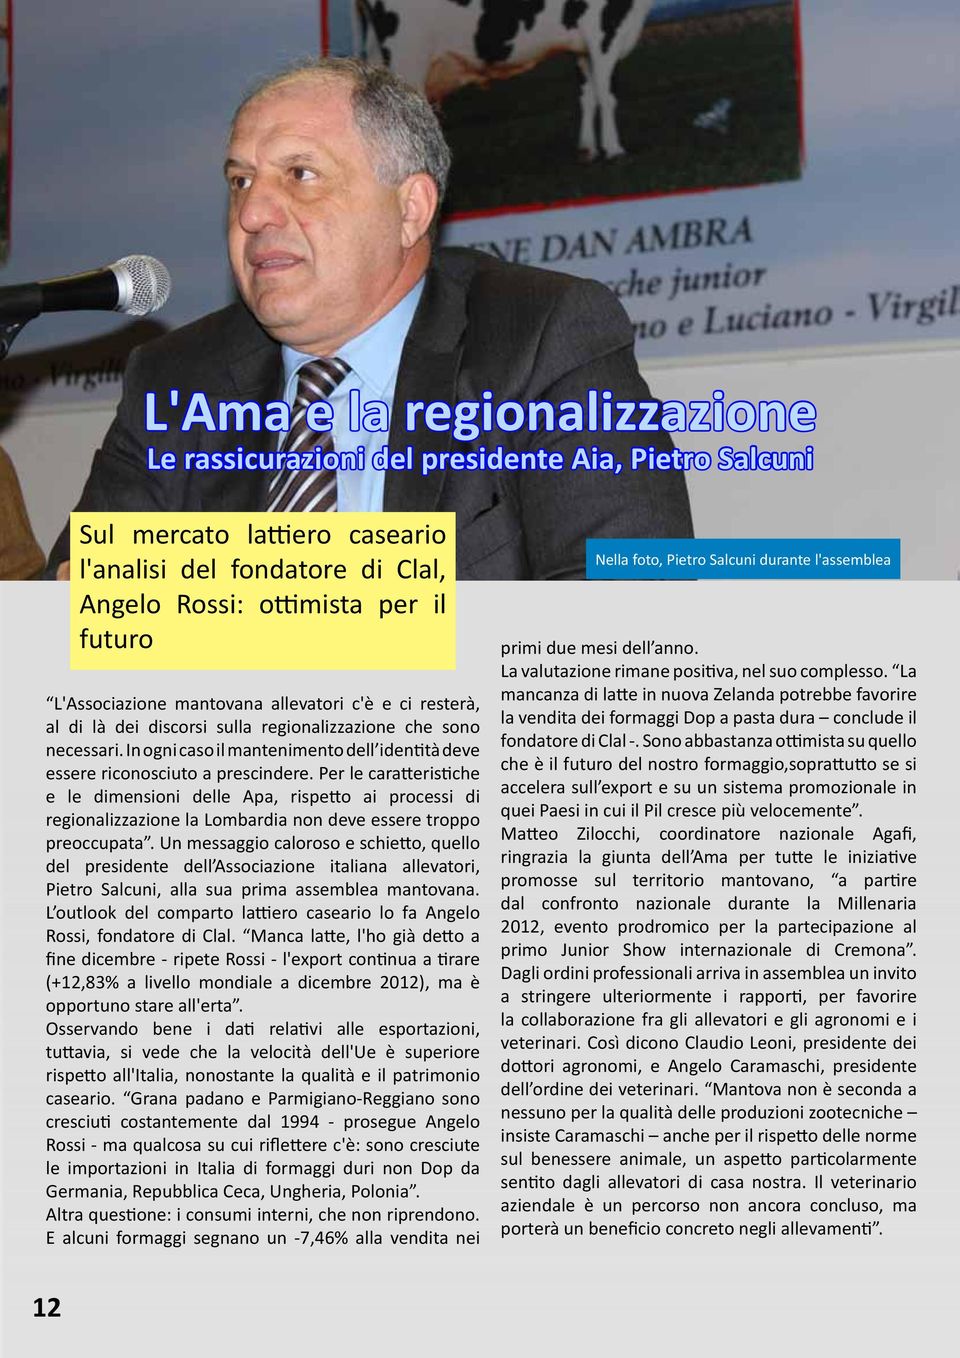 Per le caratteristiche e le dimensioni delle Apa, rispetto ai processi di regionalizzazione la Lombardia non deve essere troppo preoccupata.